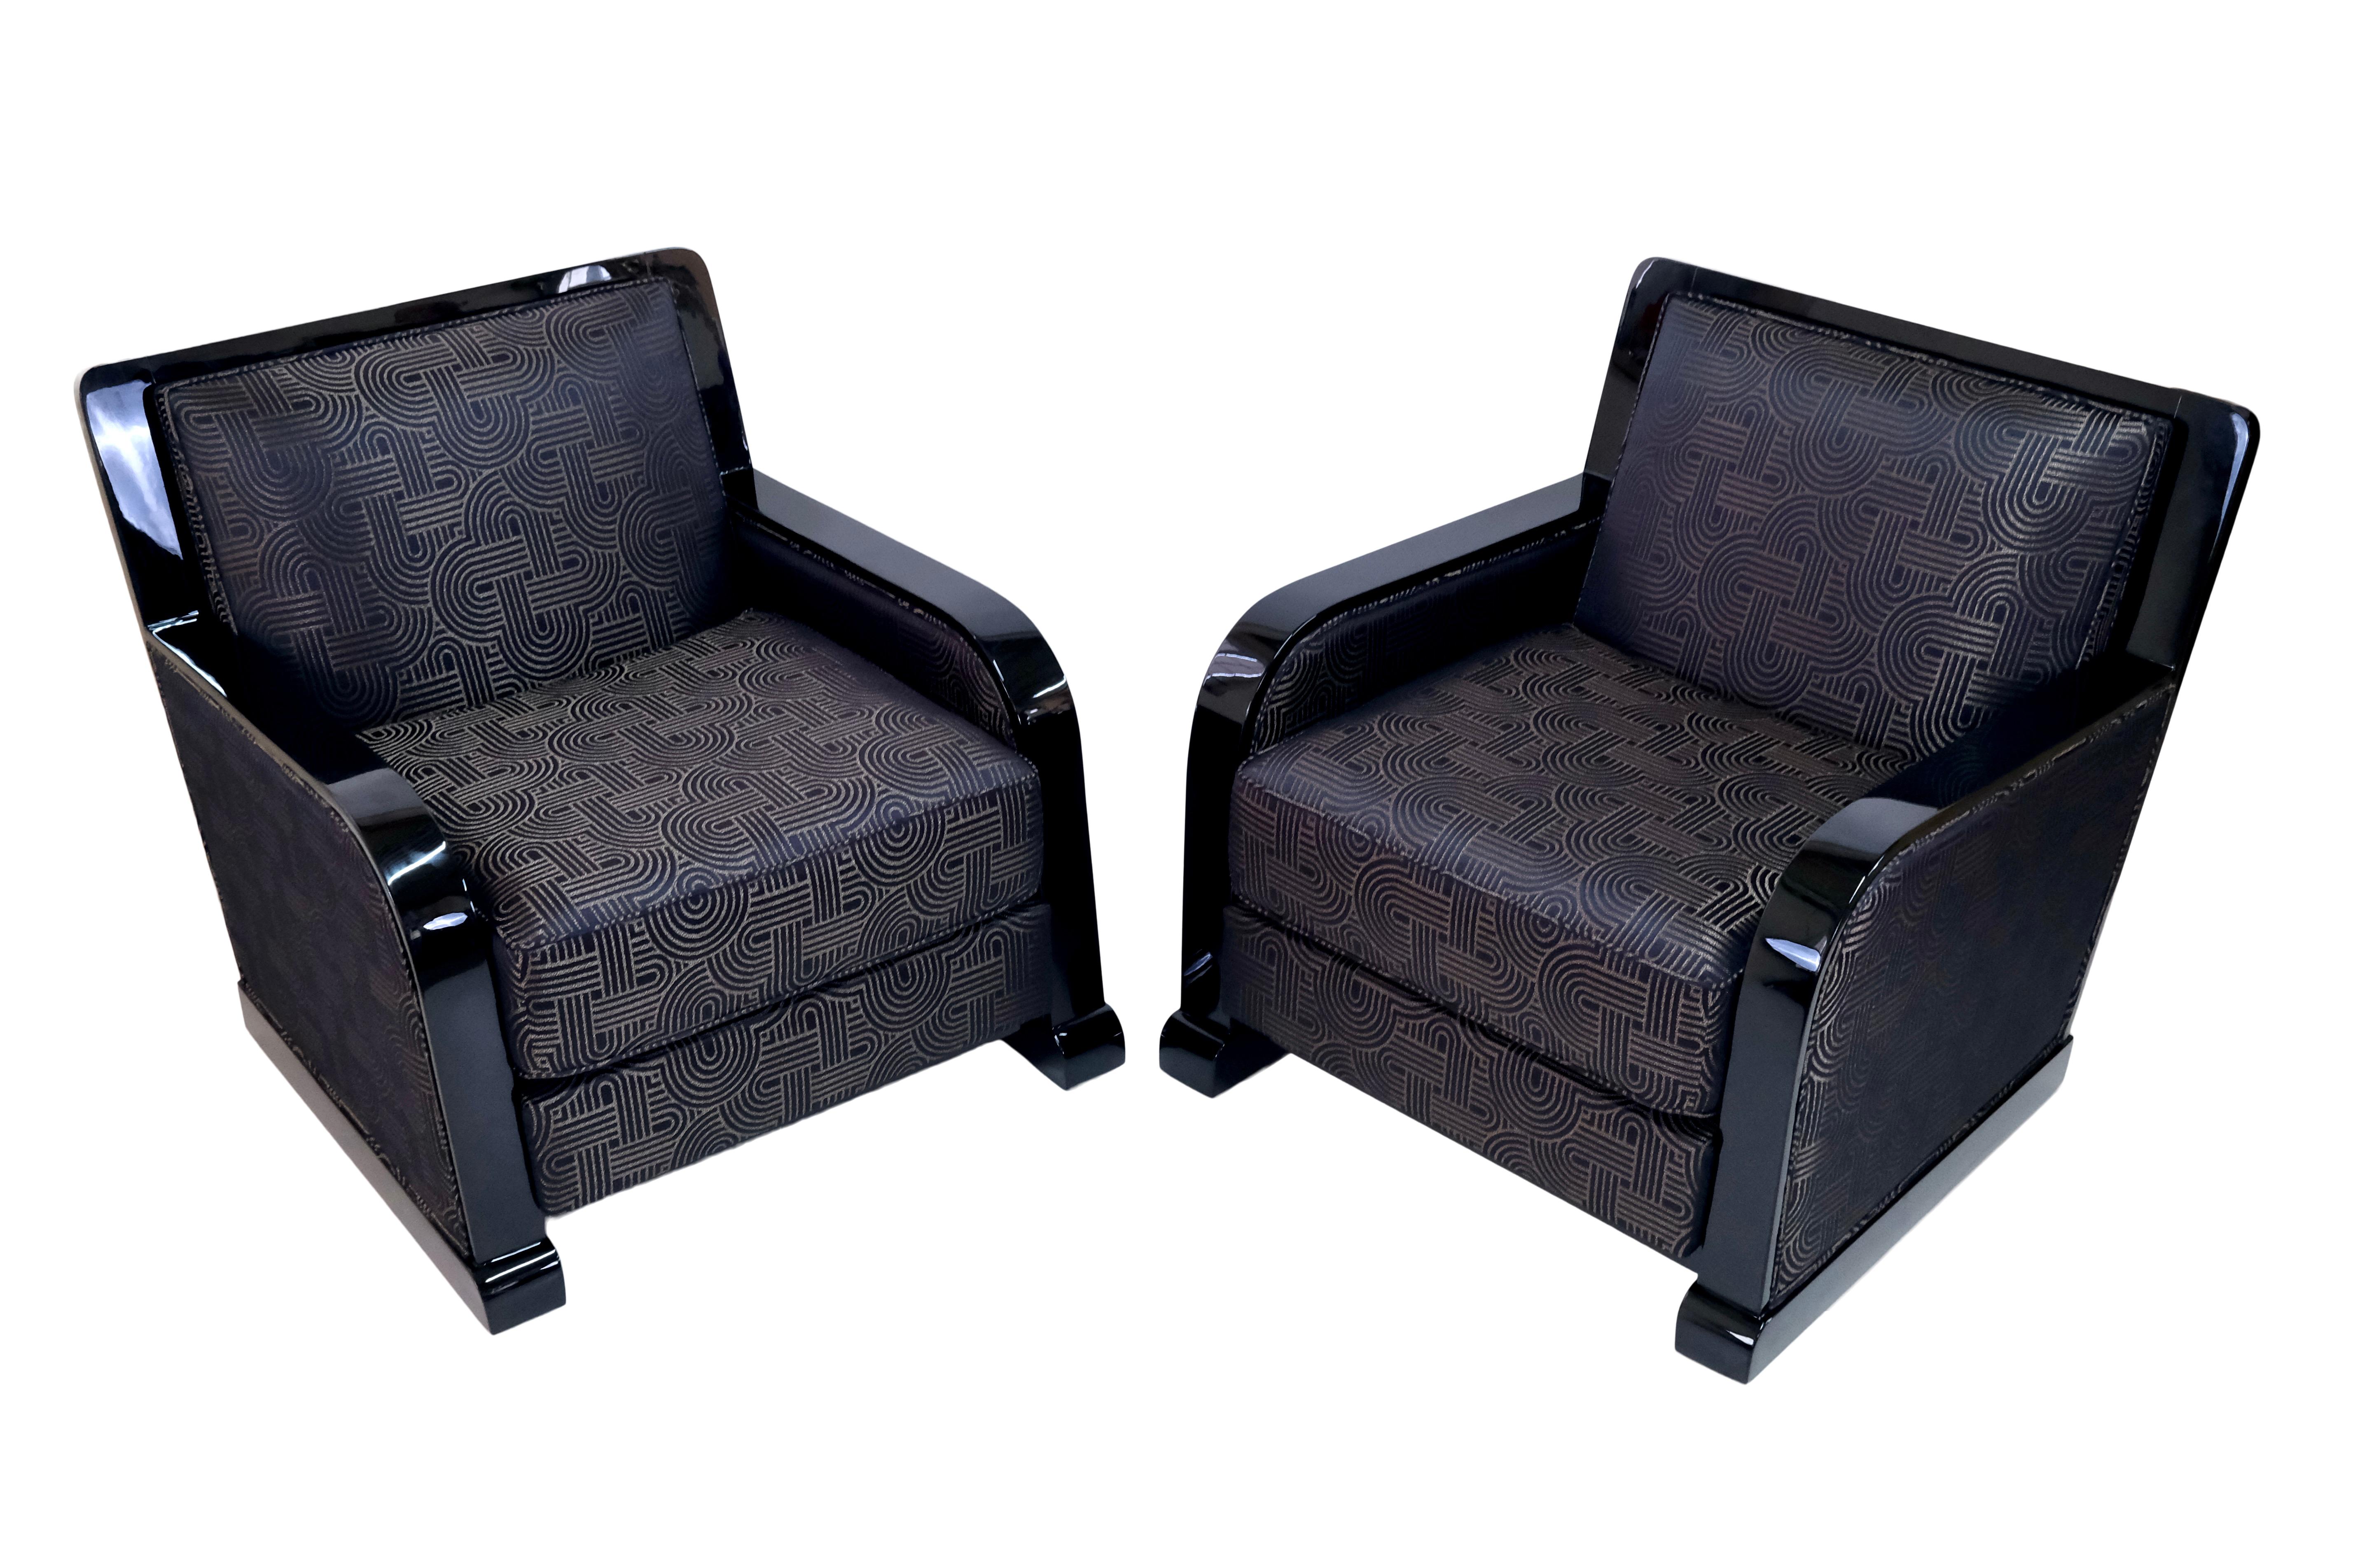 Ein Paar kräftige französische Art-Déco-Sessel. 
Holz in schwarzem Klavierlack, hochglänzend. 
Polsterung aus Stoff mit typischen Art-Déco-Ornamenten in Schwarz- und Goldtönen. 

Diese Clubsessel sind eine Bereicherung für jede Lounge. 
Sie